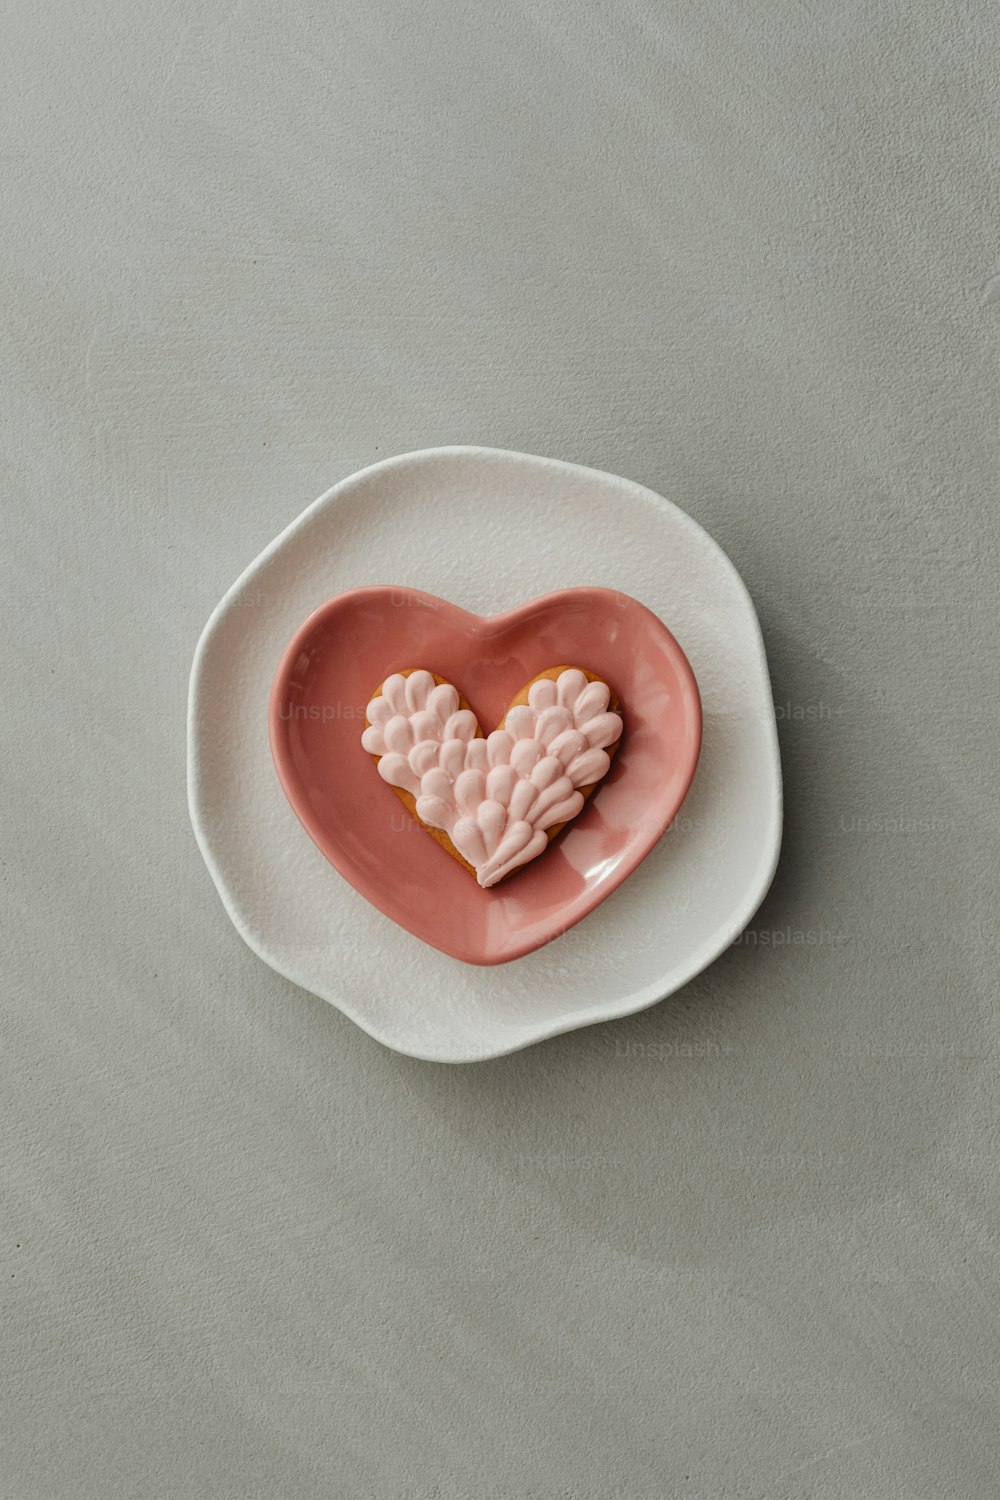 un biscuit en forme de cœur posé sur une assiette blanche